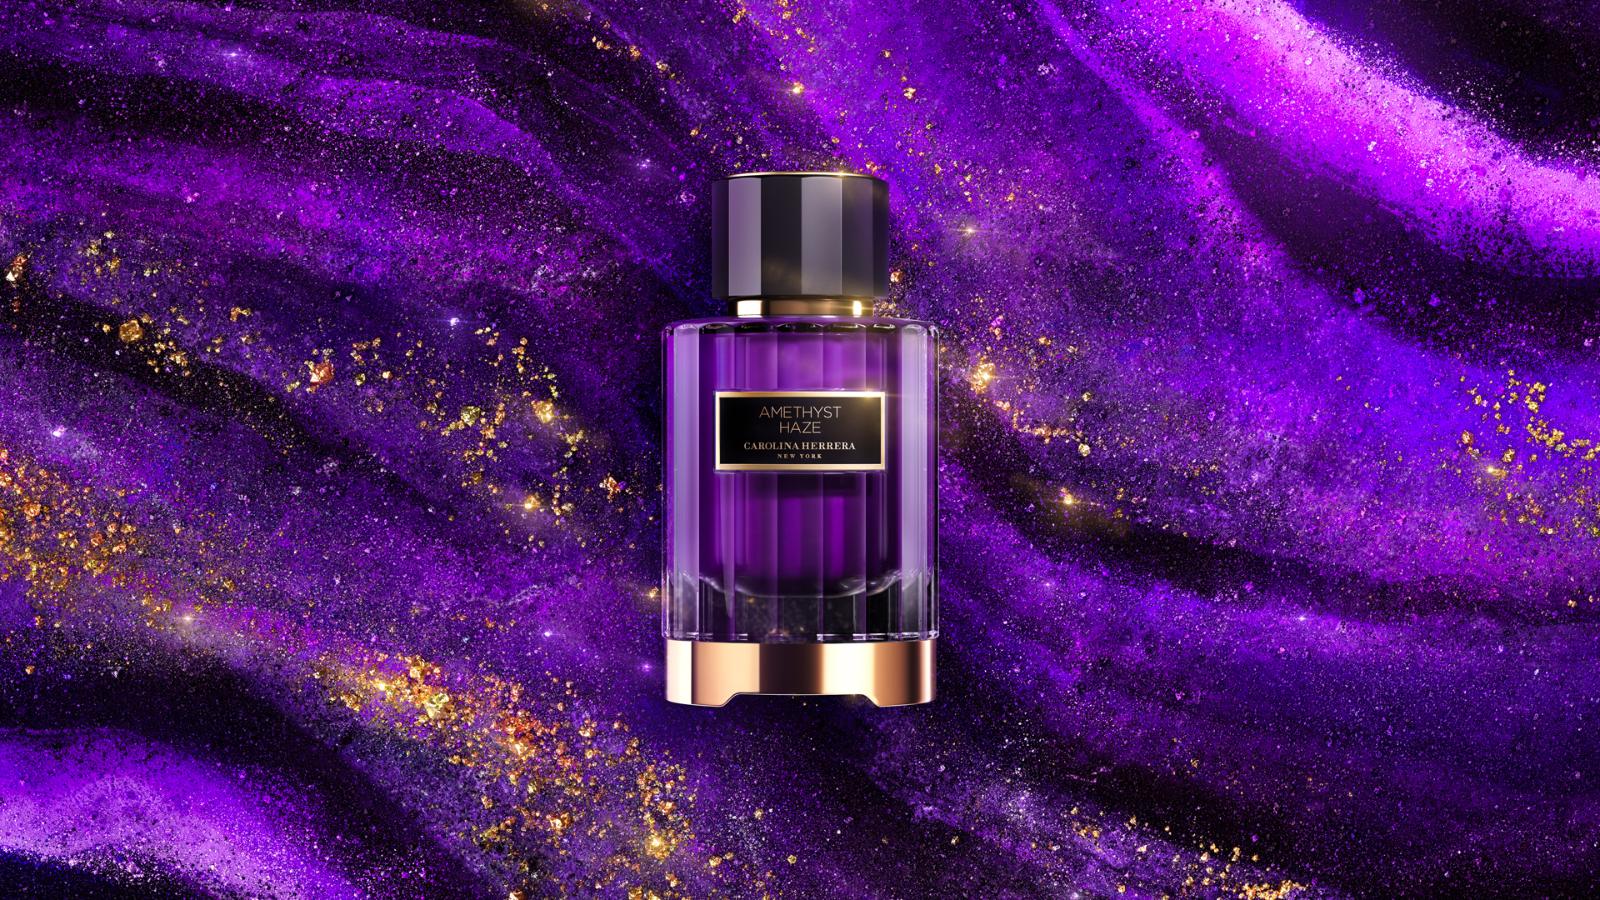 Возьмем, к примеру, роскошную парфюмерную упаковку: глубокий фиолетовый цвет источает таинственность, а золотые акценты добавляют ощущение роскоши